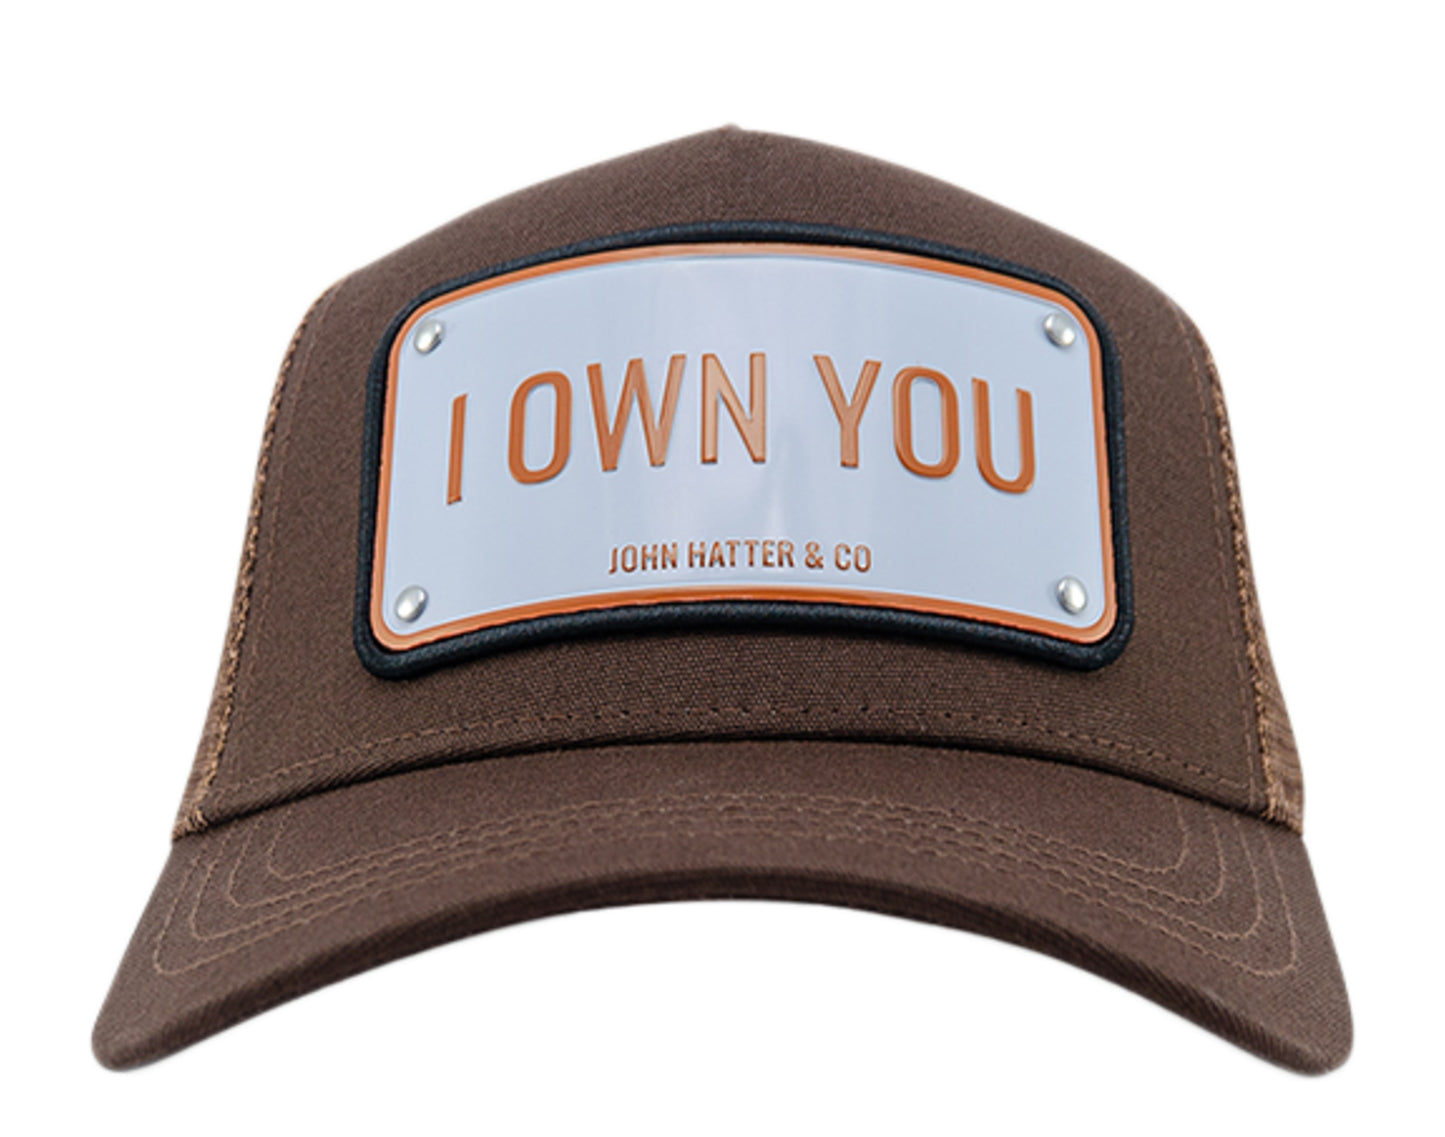 John Hatter & Co I Own You Trucker Hat